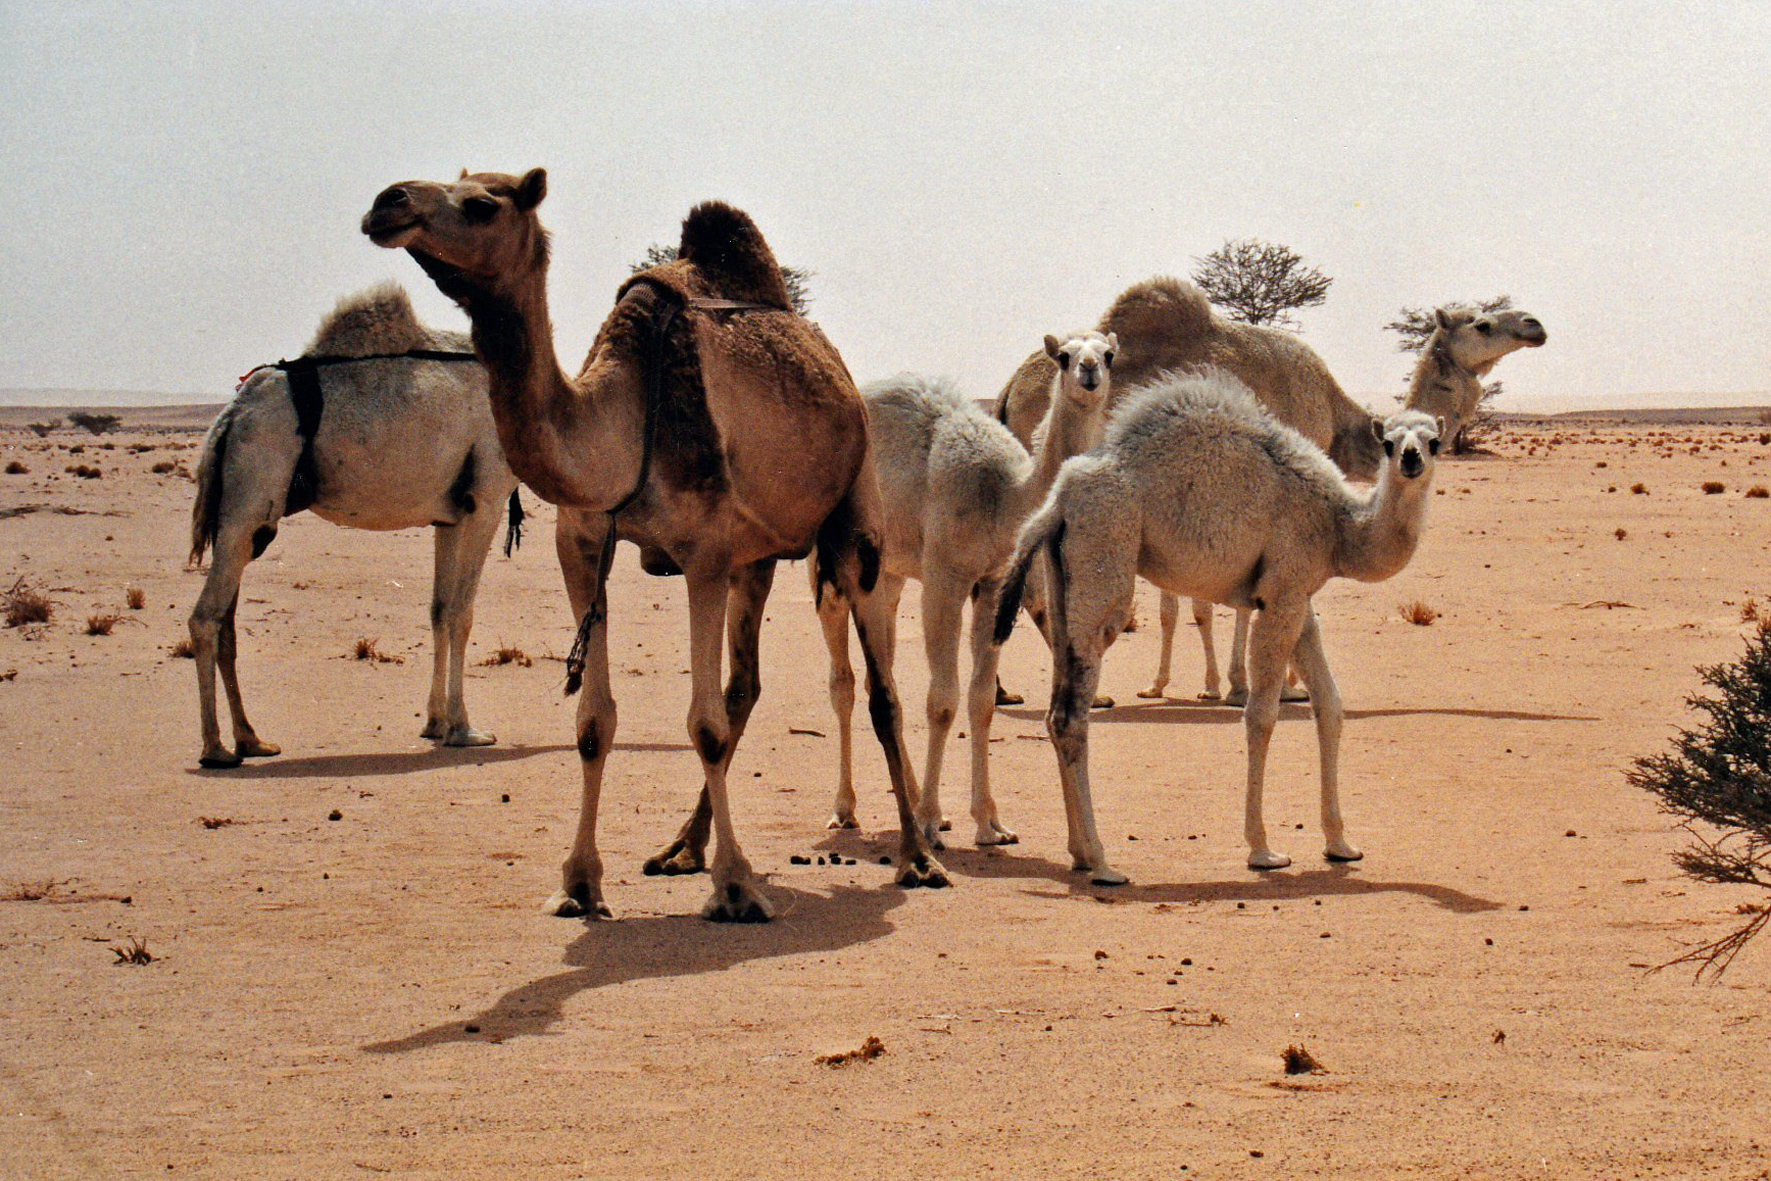 Saudi camels